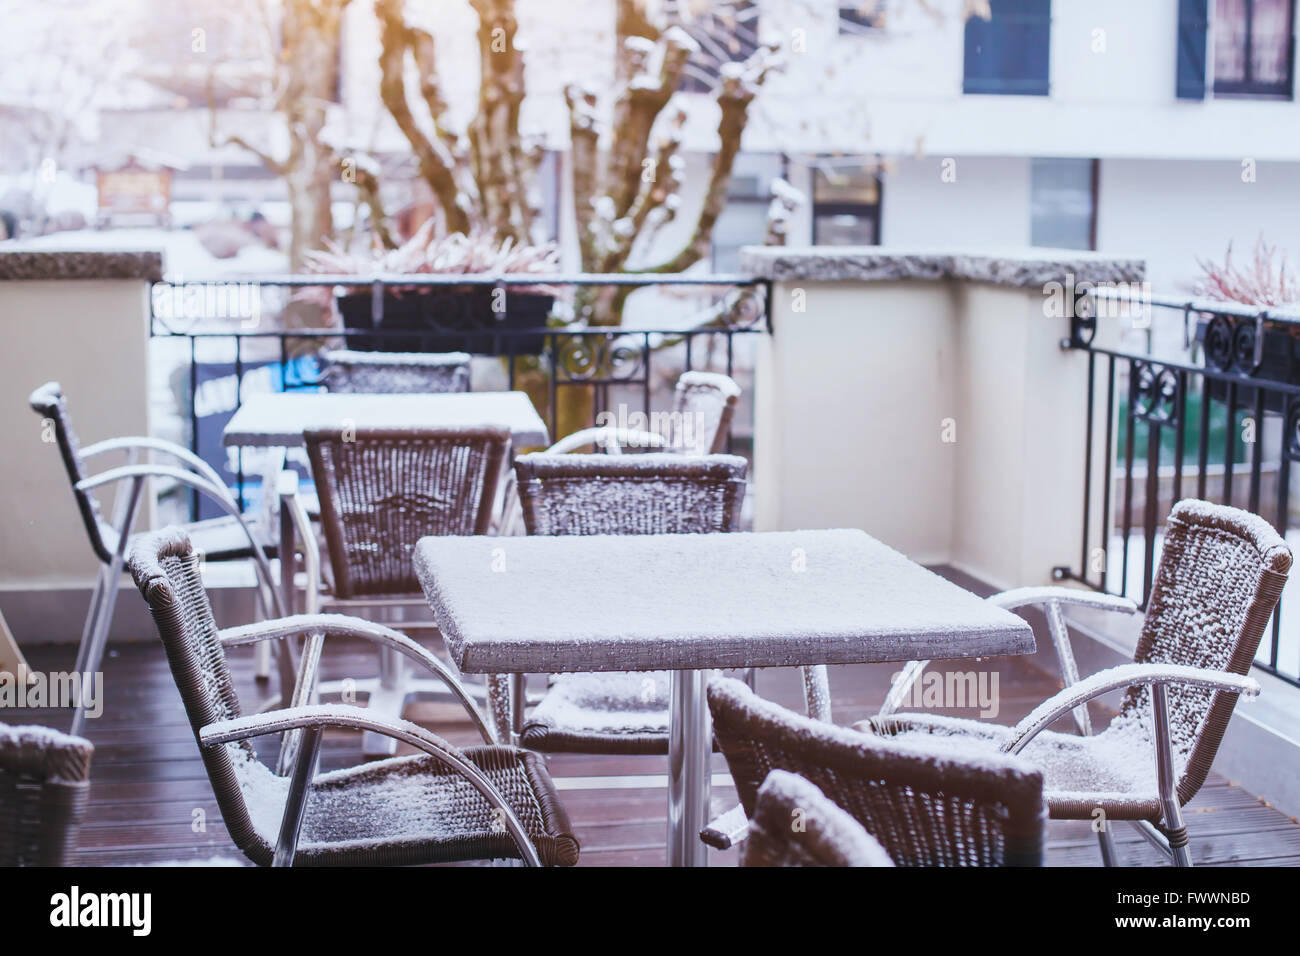 Terrasse de café de la rue en hiver, des tables et des chaises recouvertes de neige Banque D'Images